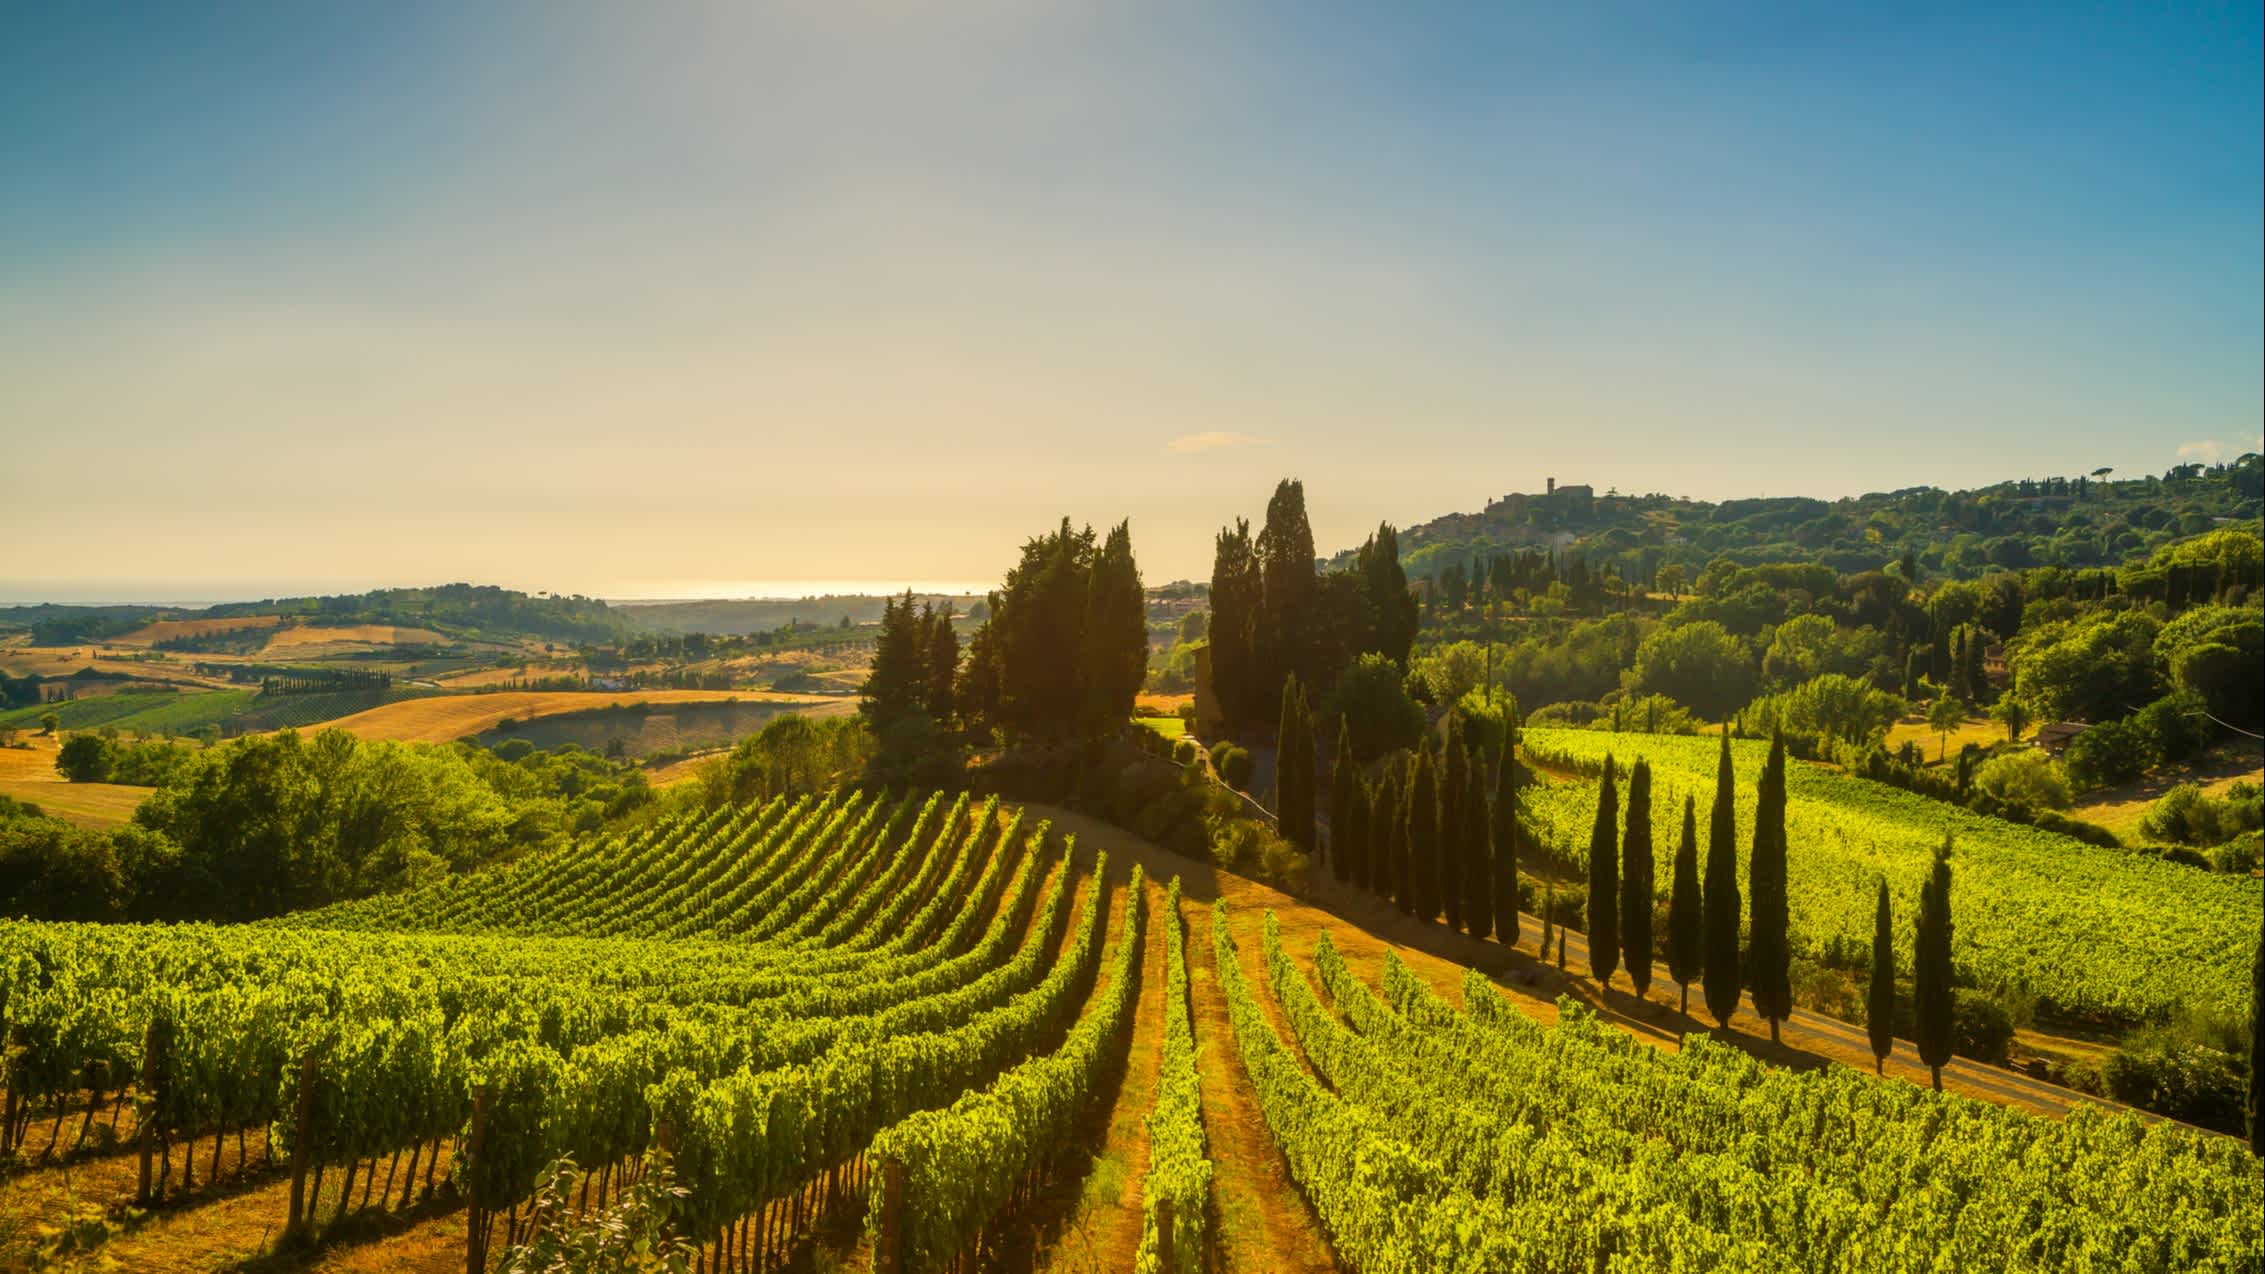 Casale Marittimo village, vignobles et campagne dans la Maremma. Toscane, Italie